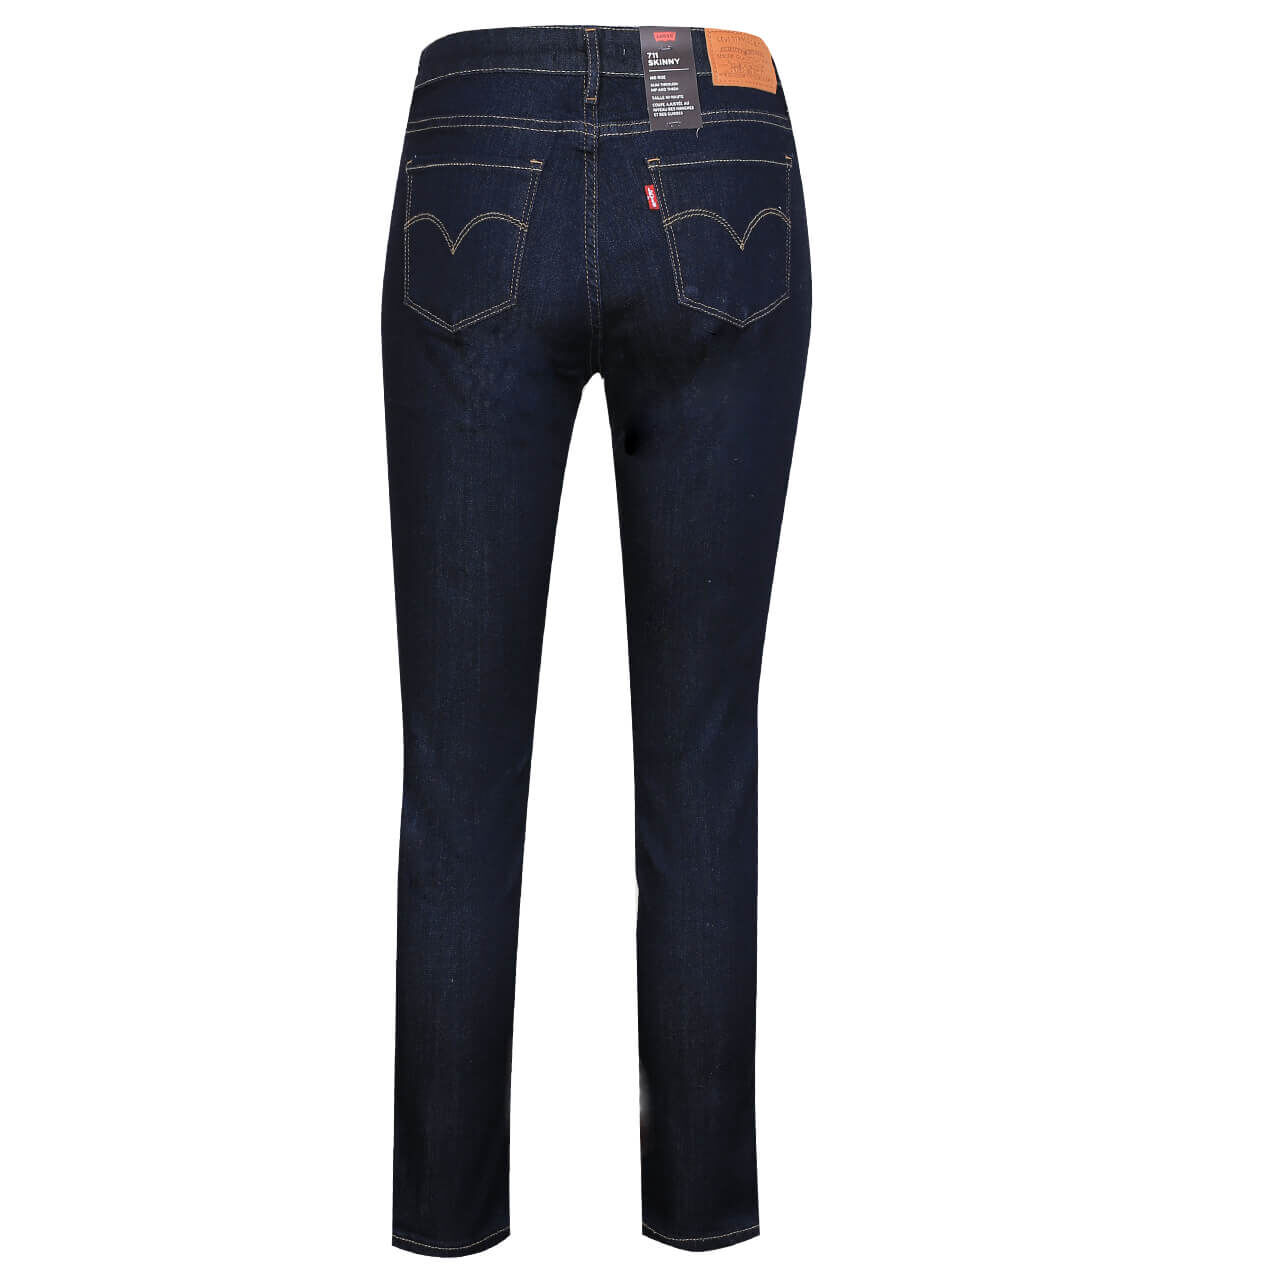 Levis Jeans 711 Skinny für Damen in Dunkelblau, FarbNr.: 0352